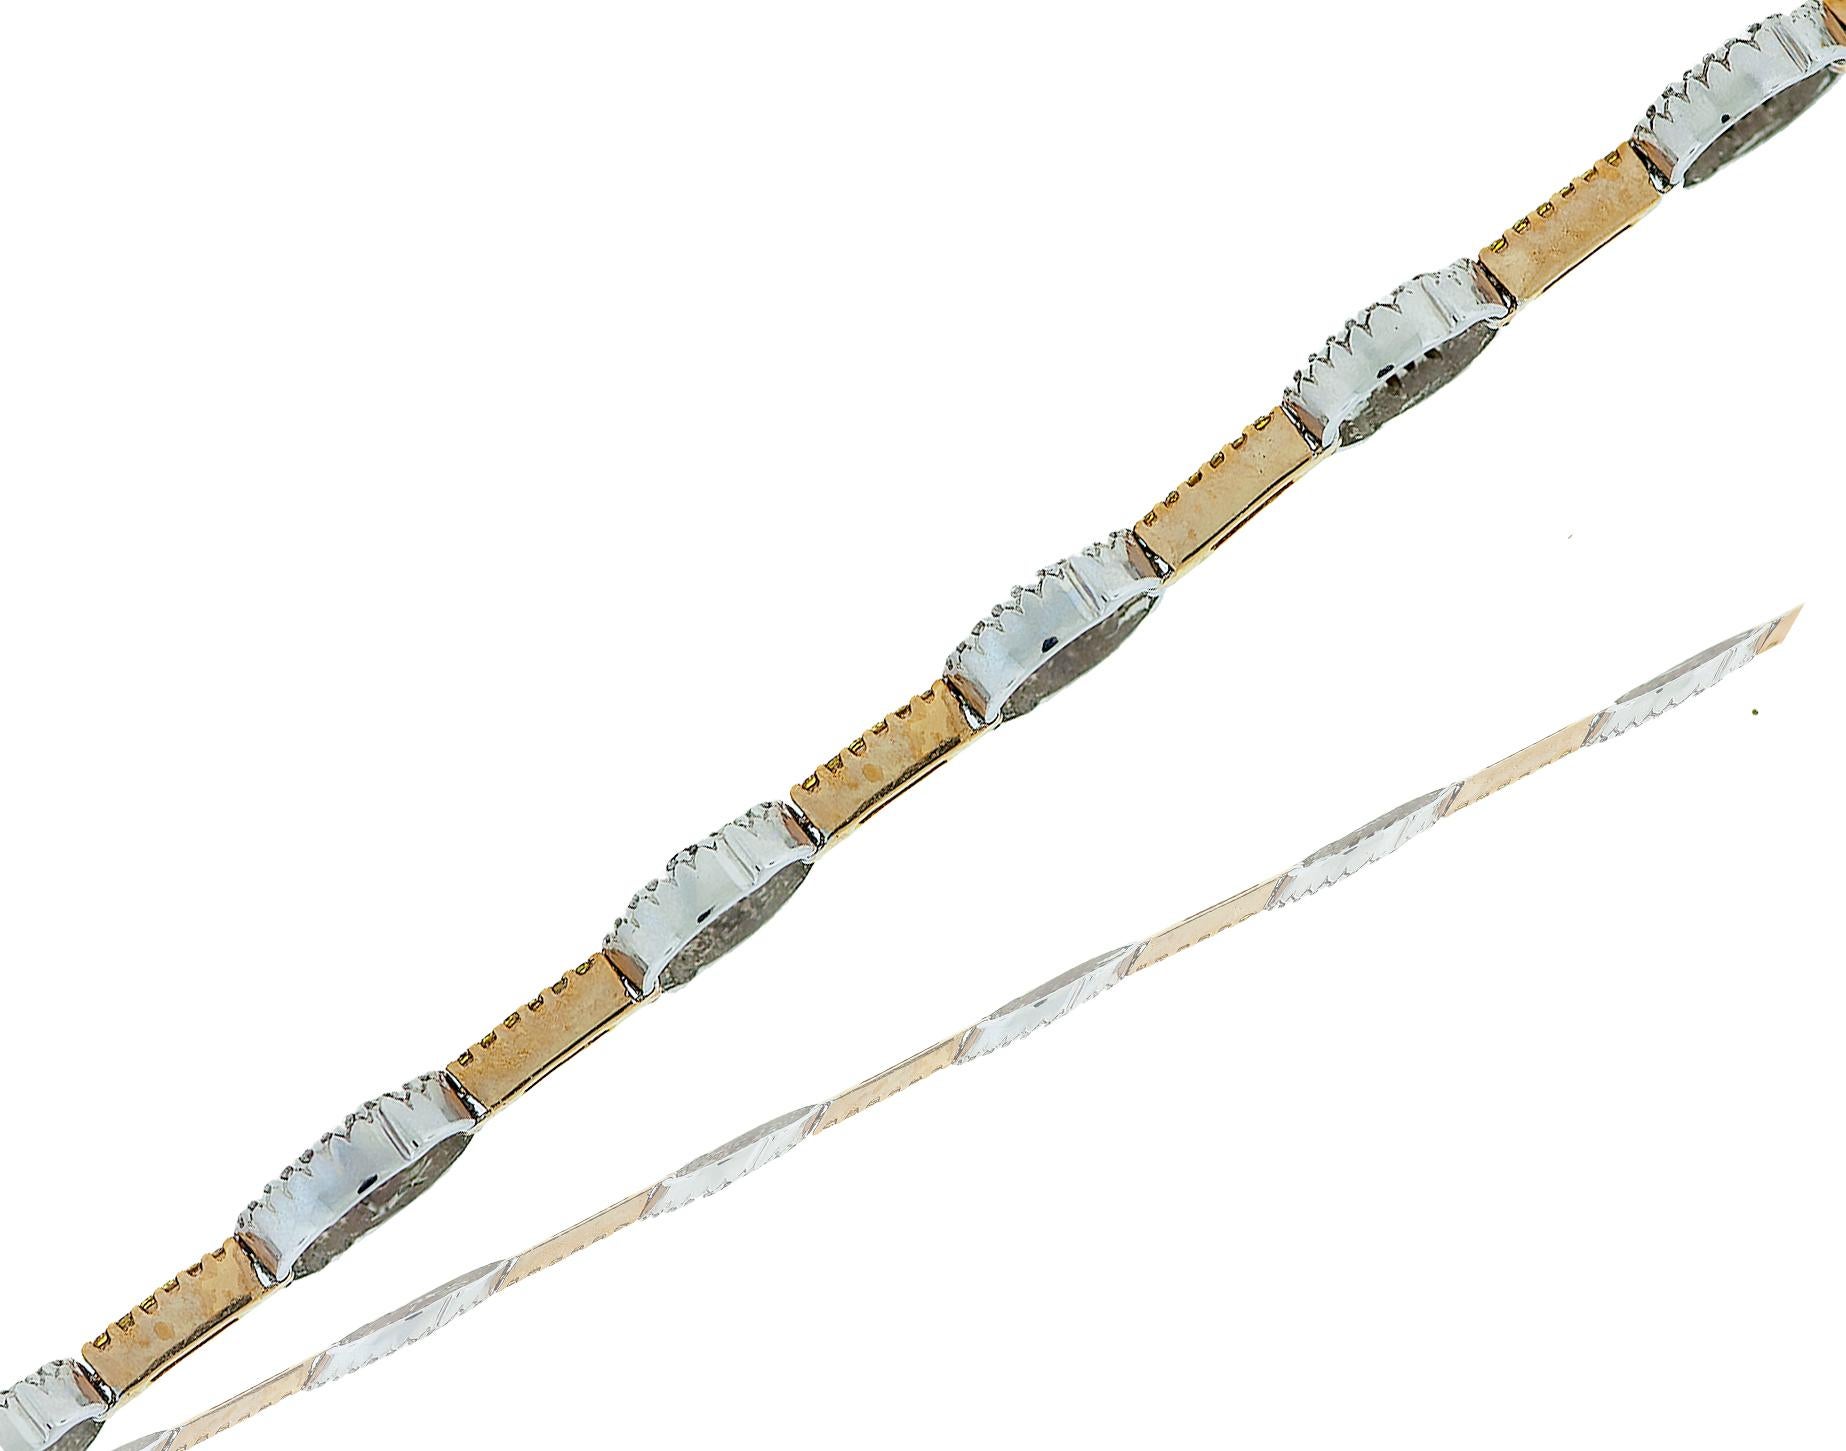 Contemporary Pave Yellow and White Diamond Tennis-Bracelet 2.50
Carat 18 Karat